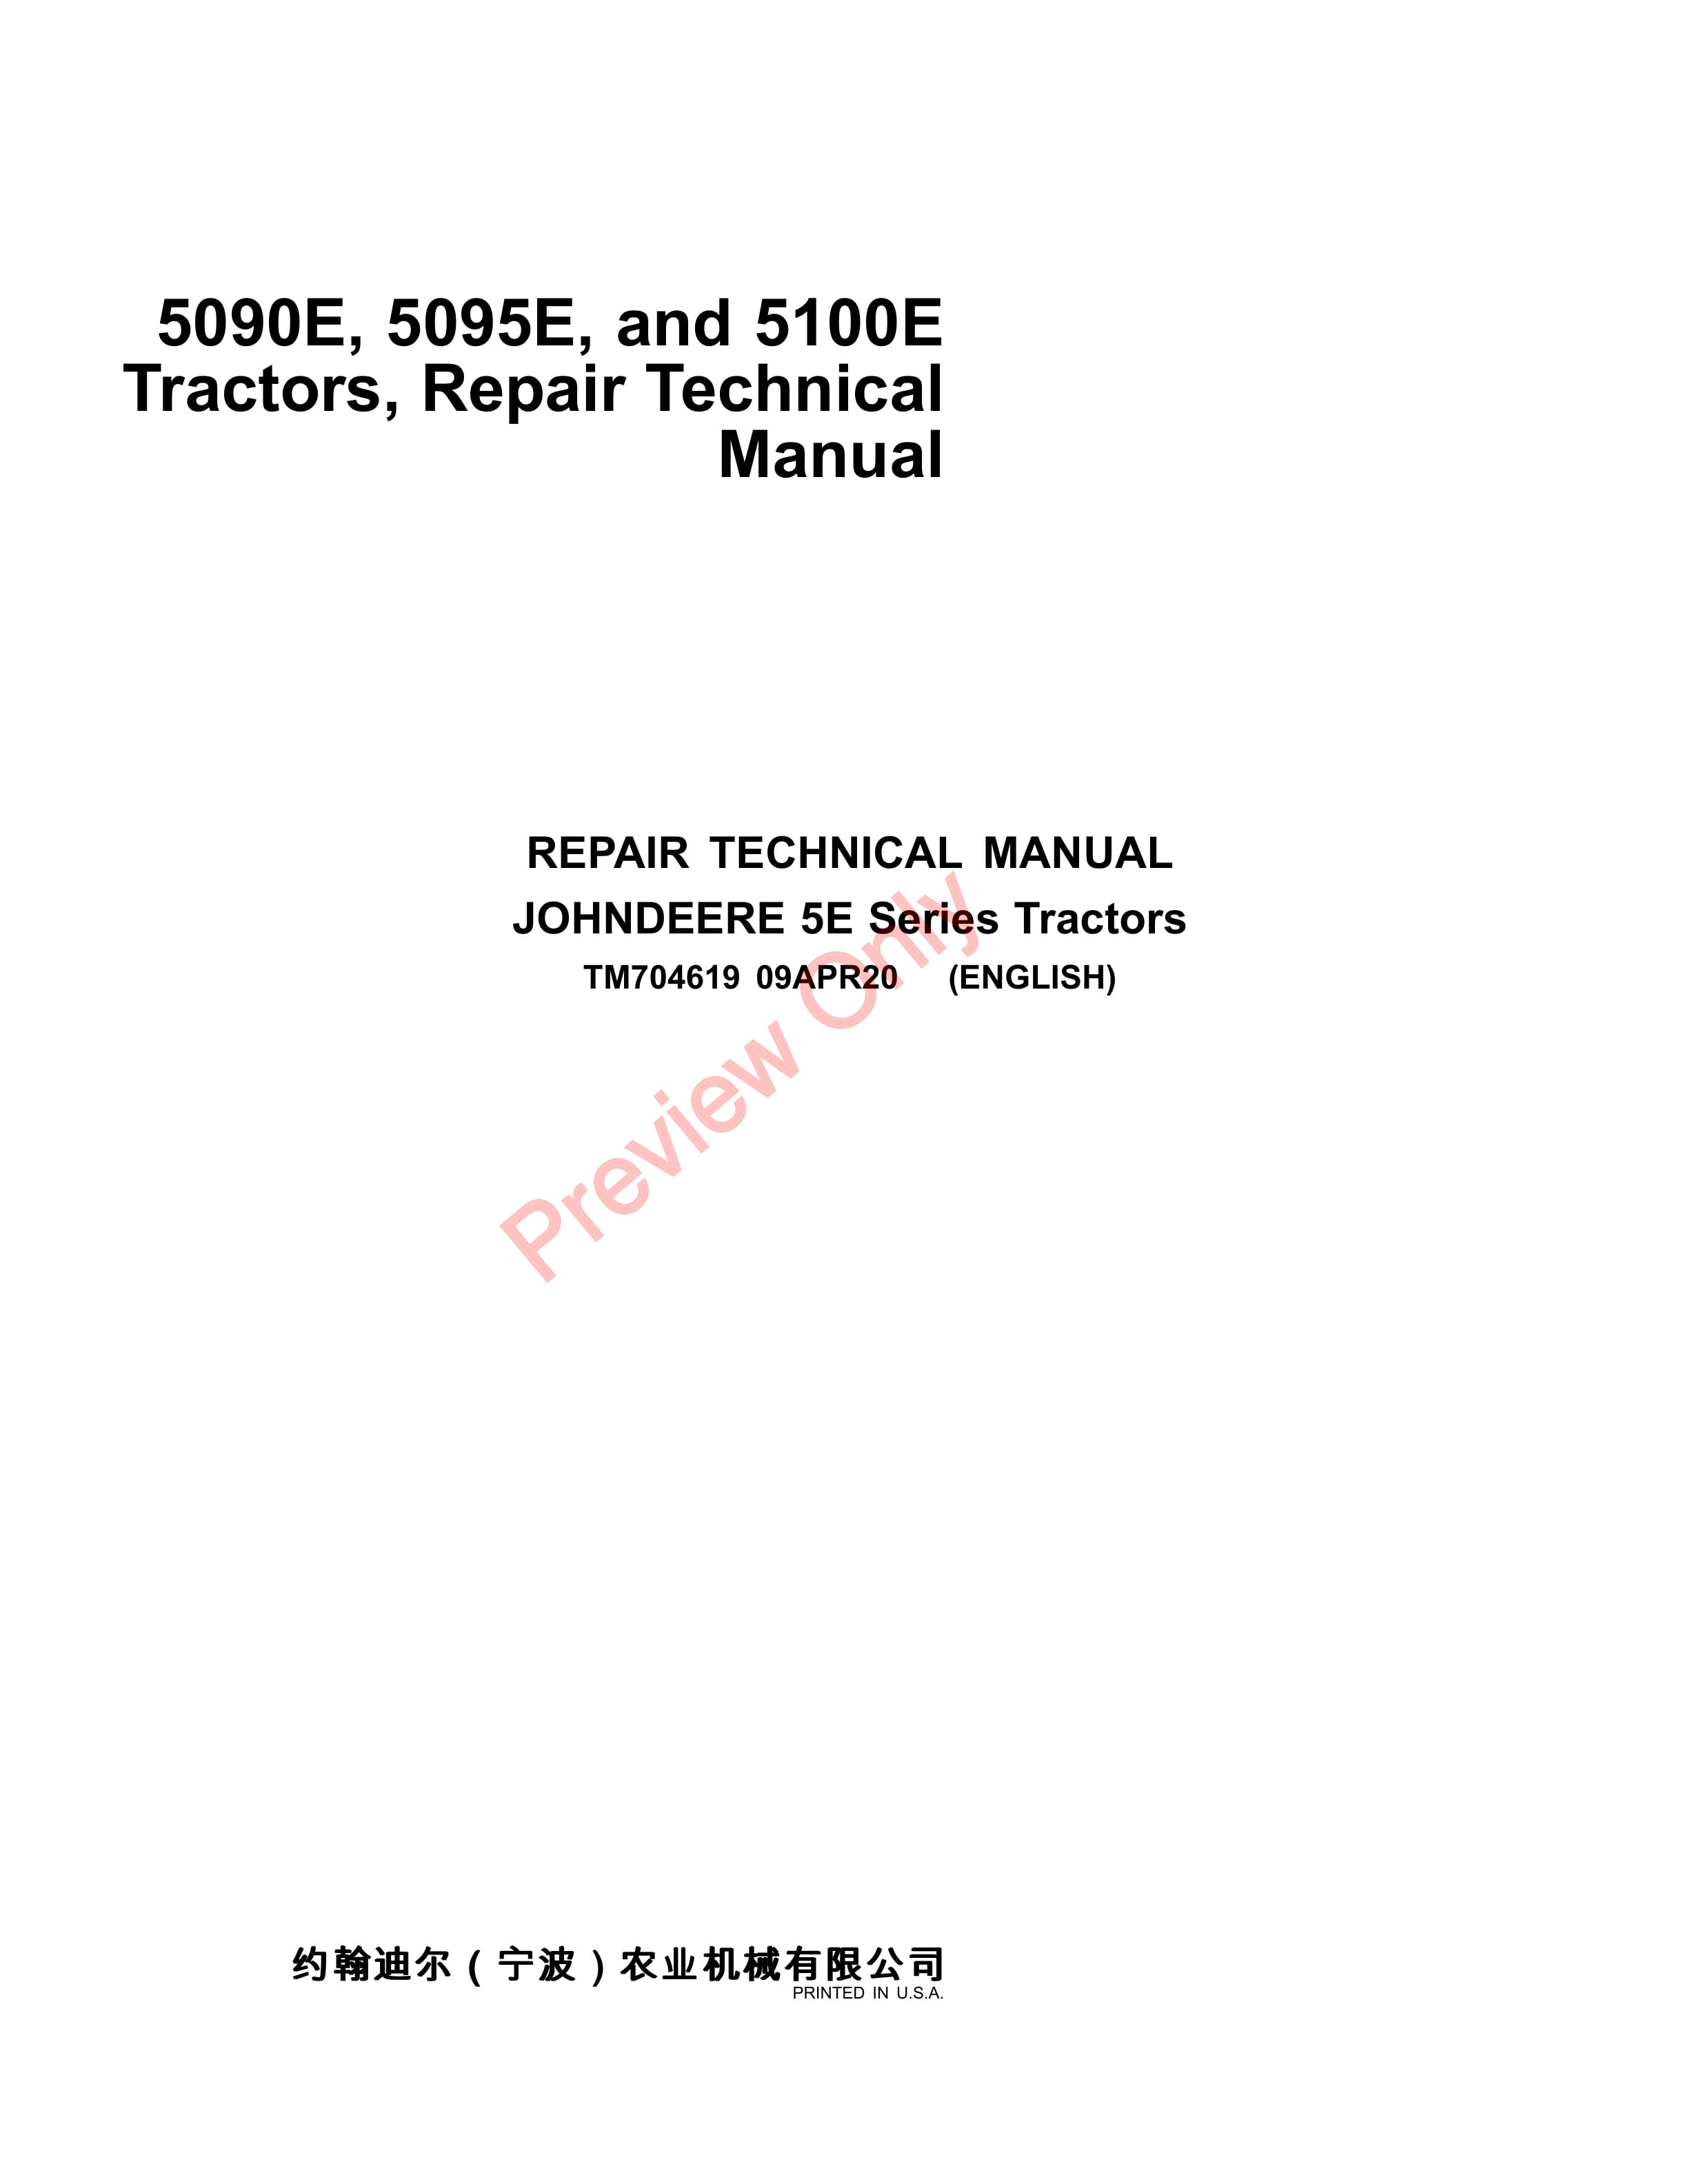 John Deere 5090E, 5095E, and 5100E Tractors Repair Technical Manual TM704619 09APR20-1